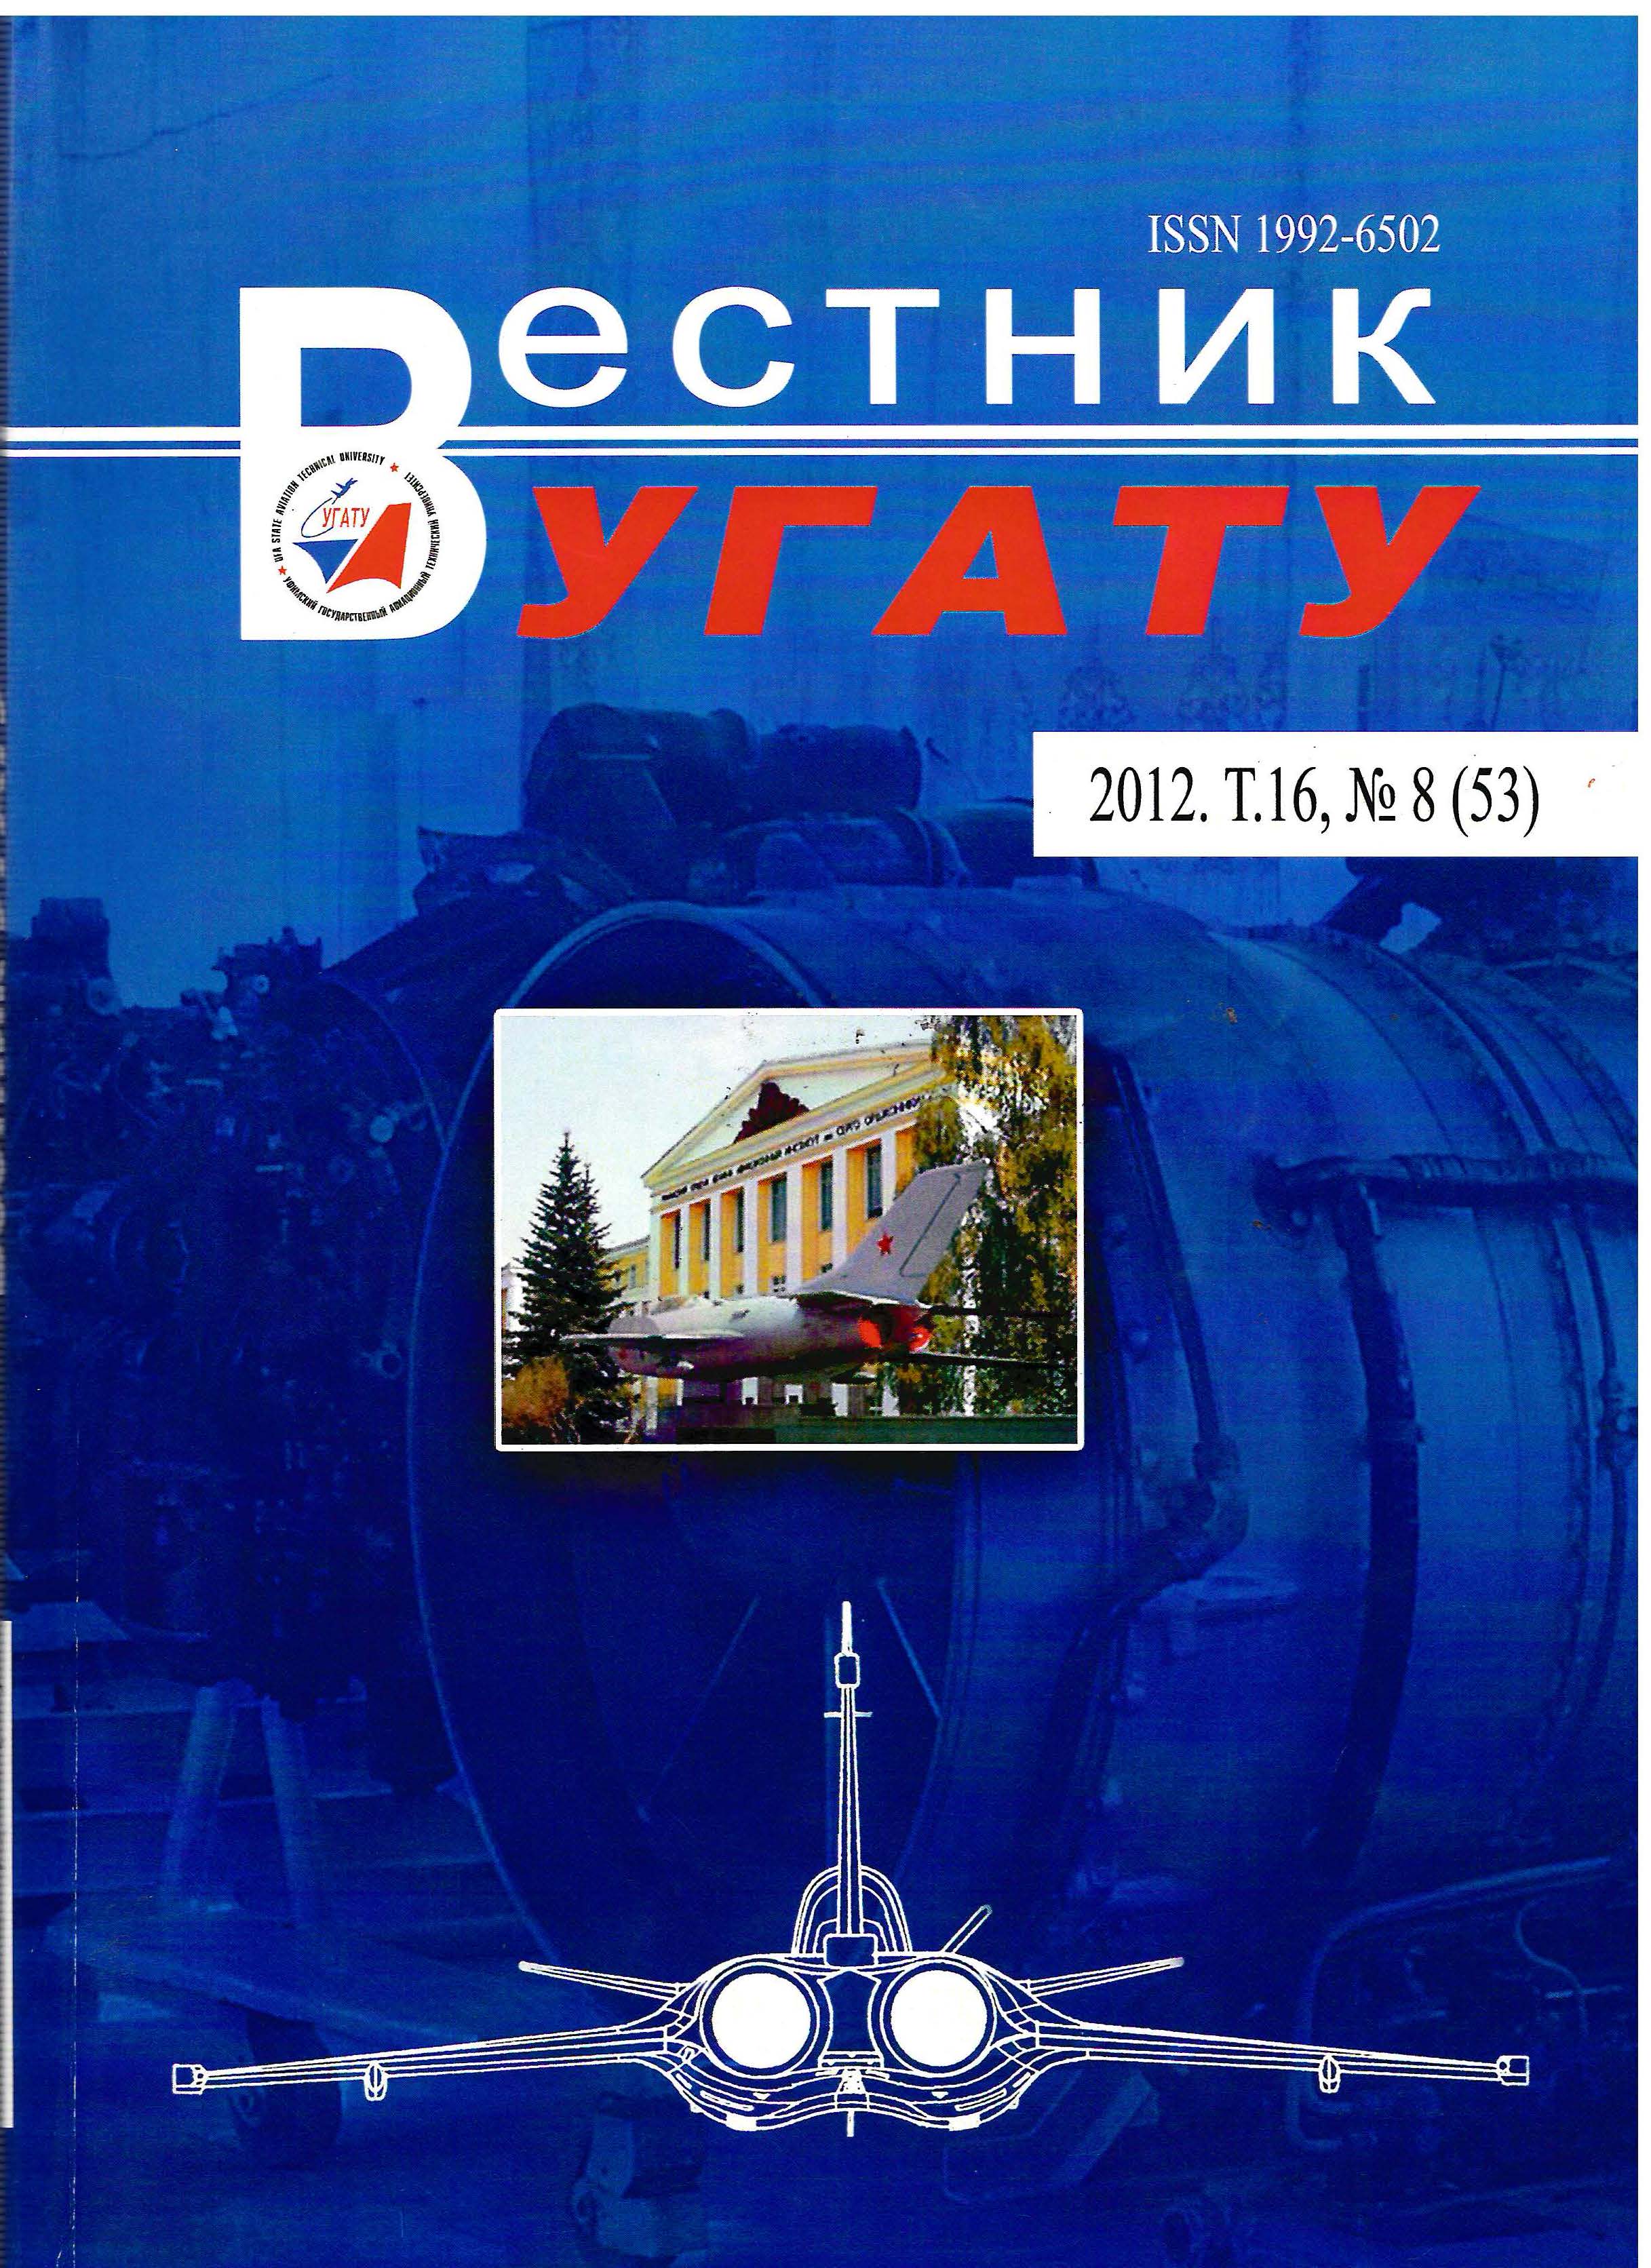 					View Vol. 16 No. 8 (53) (2012): Вестник УГАТУ
				